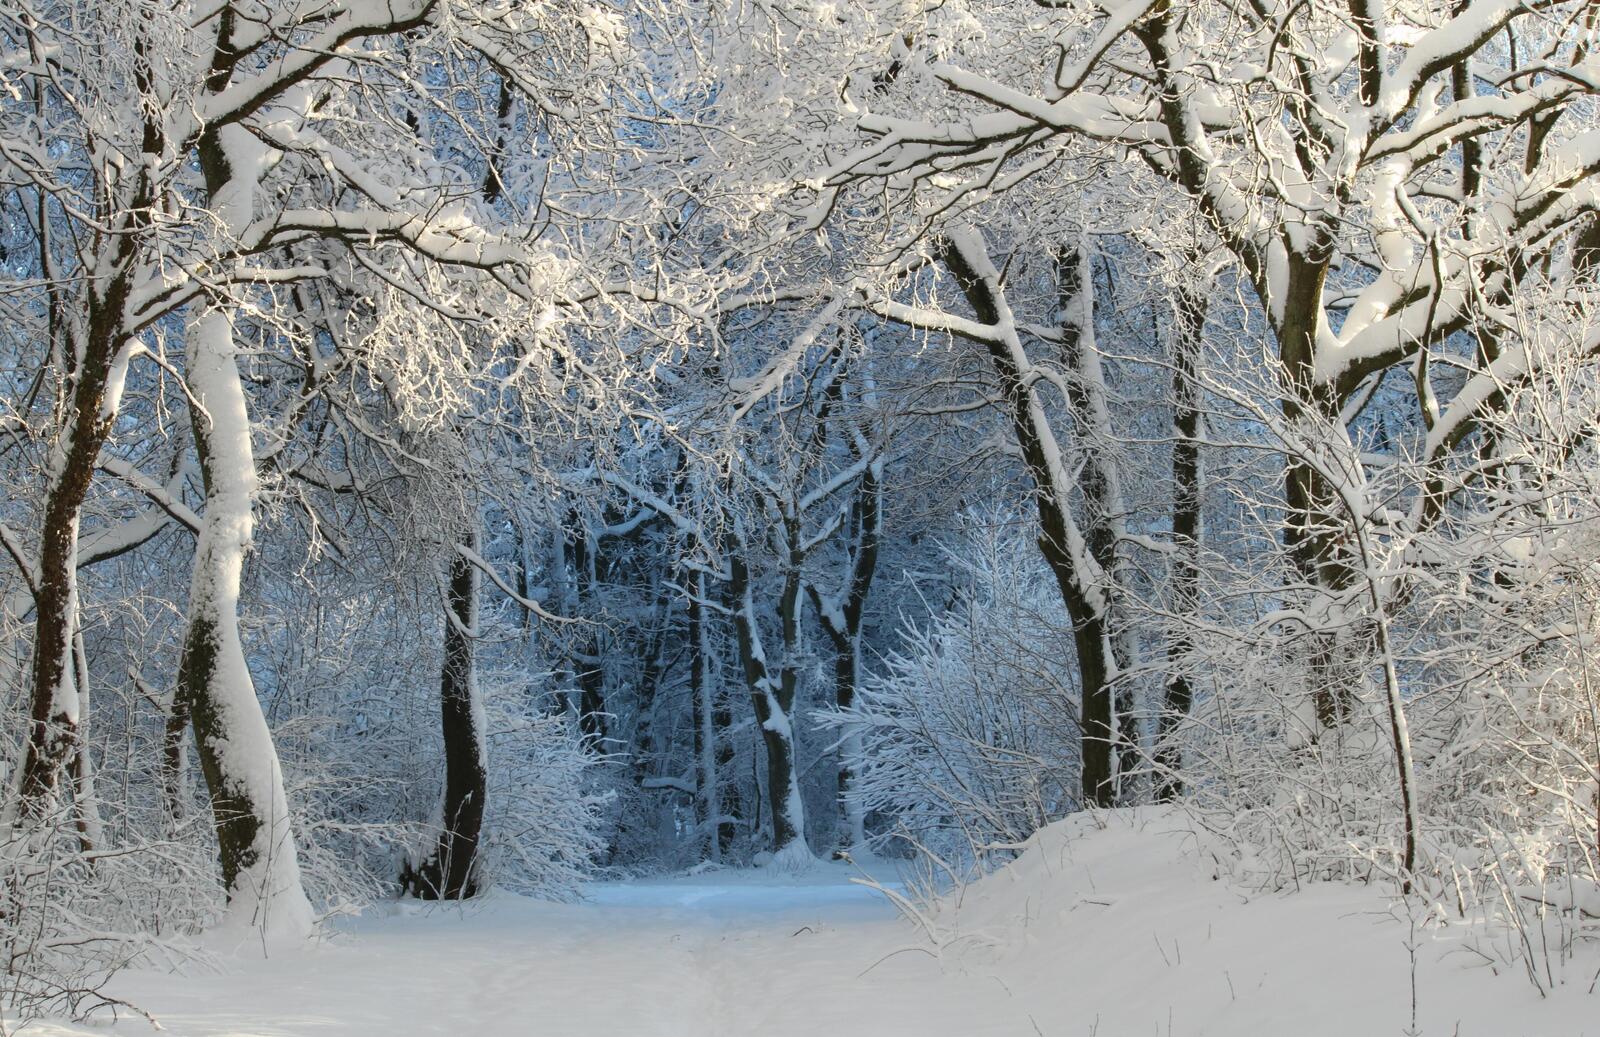 免费照片笼罩在雪中的冬季森林的入口处